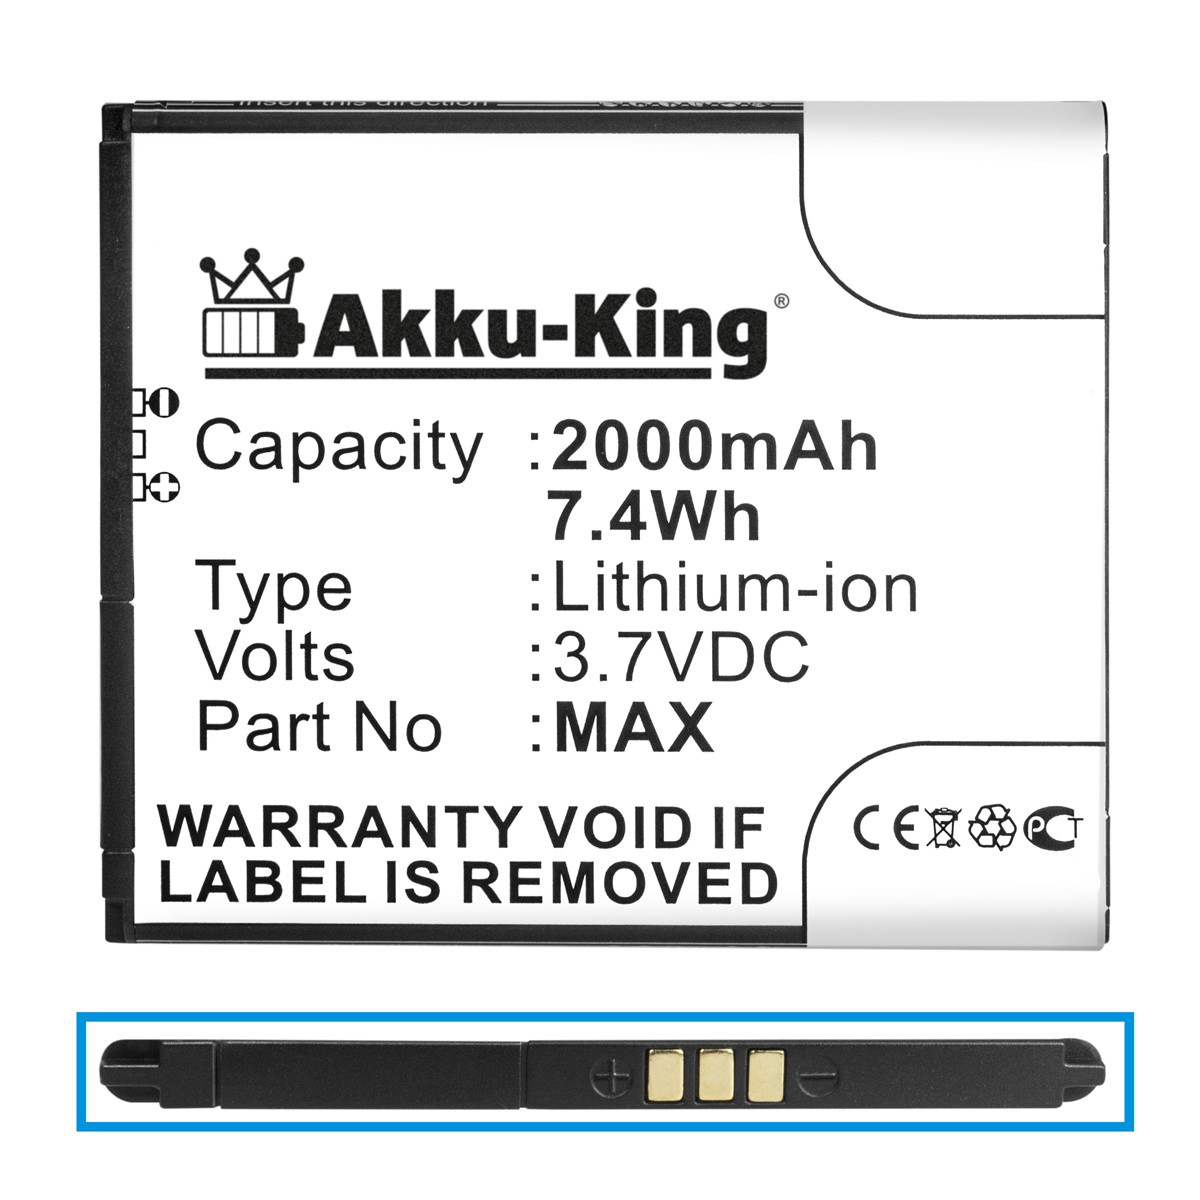 AKKU-KING Akku kompatibel mit Wiko Max 3.7 Volt, Li-Ion 2000mAh Handy-Akku